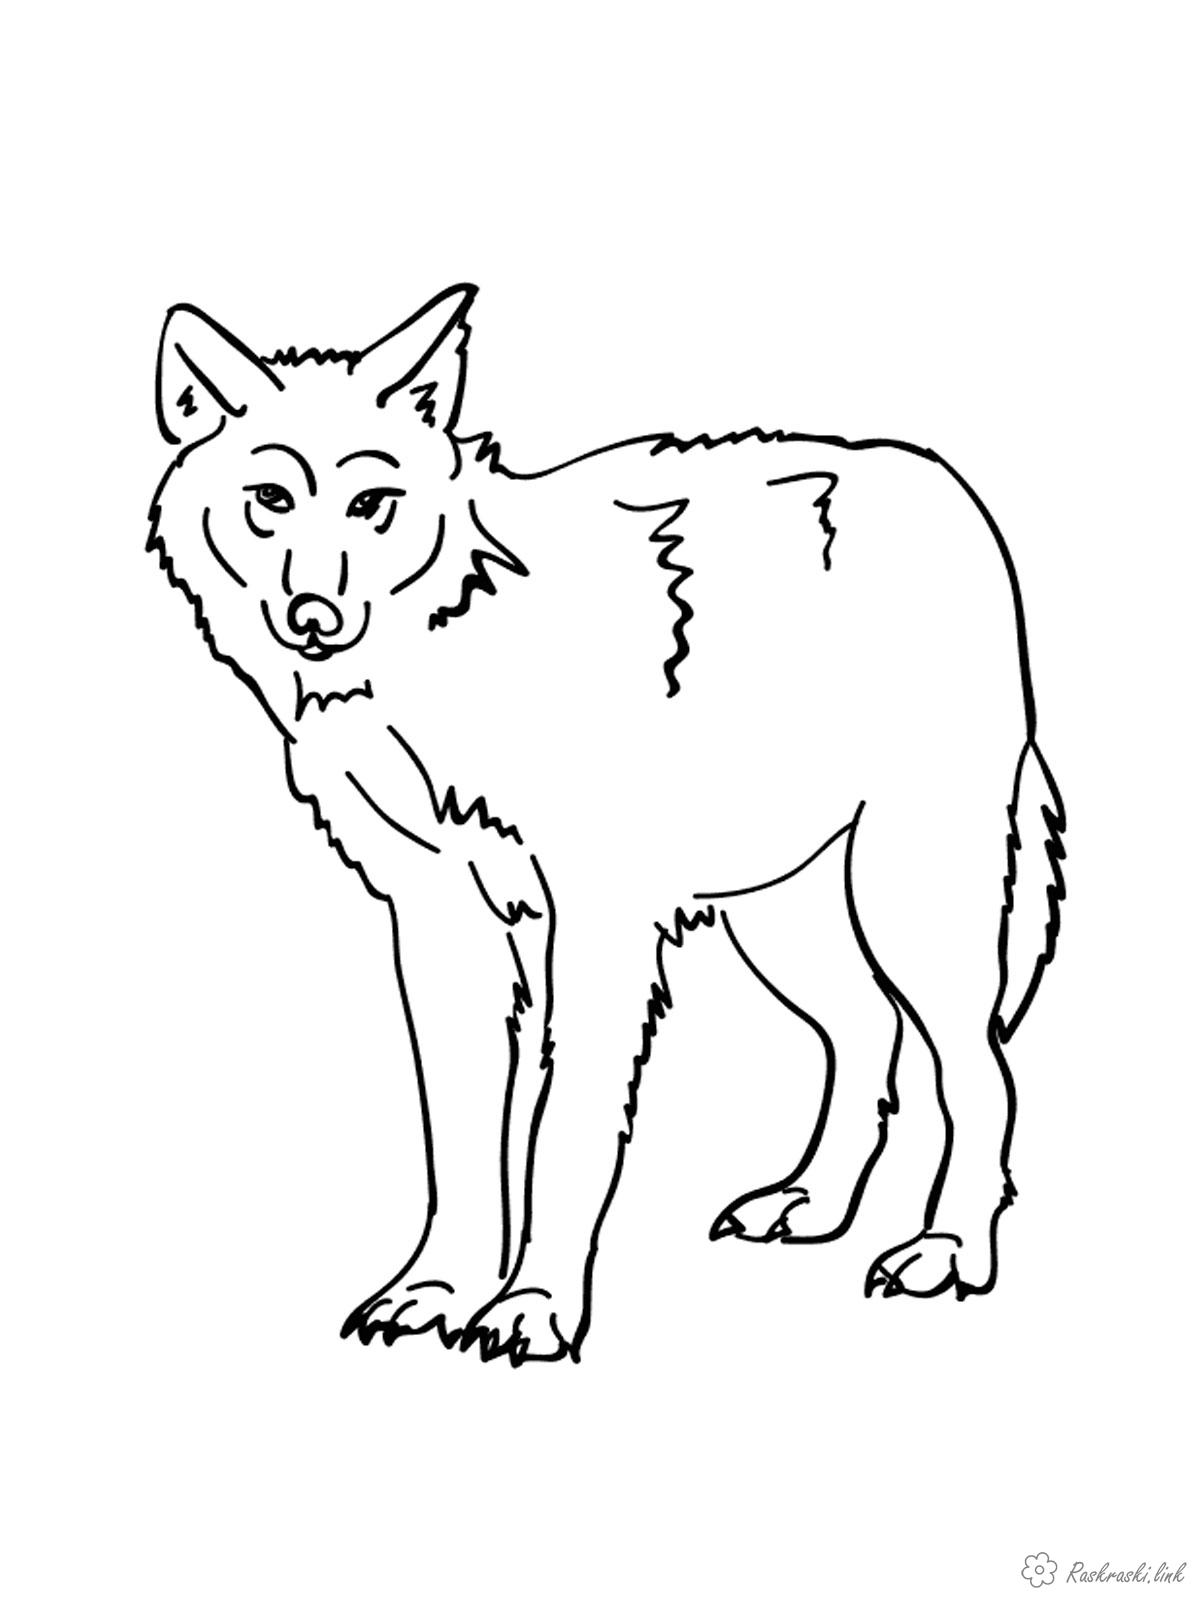 Розмальовки вовк розфарбування вовк для дітей